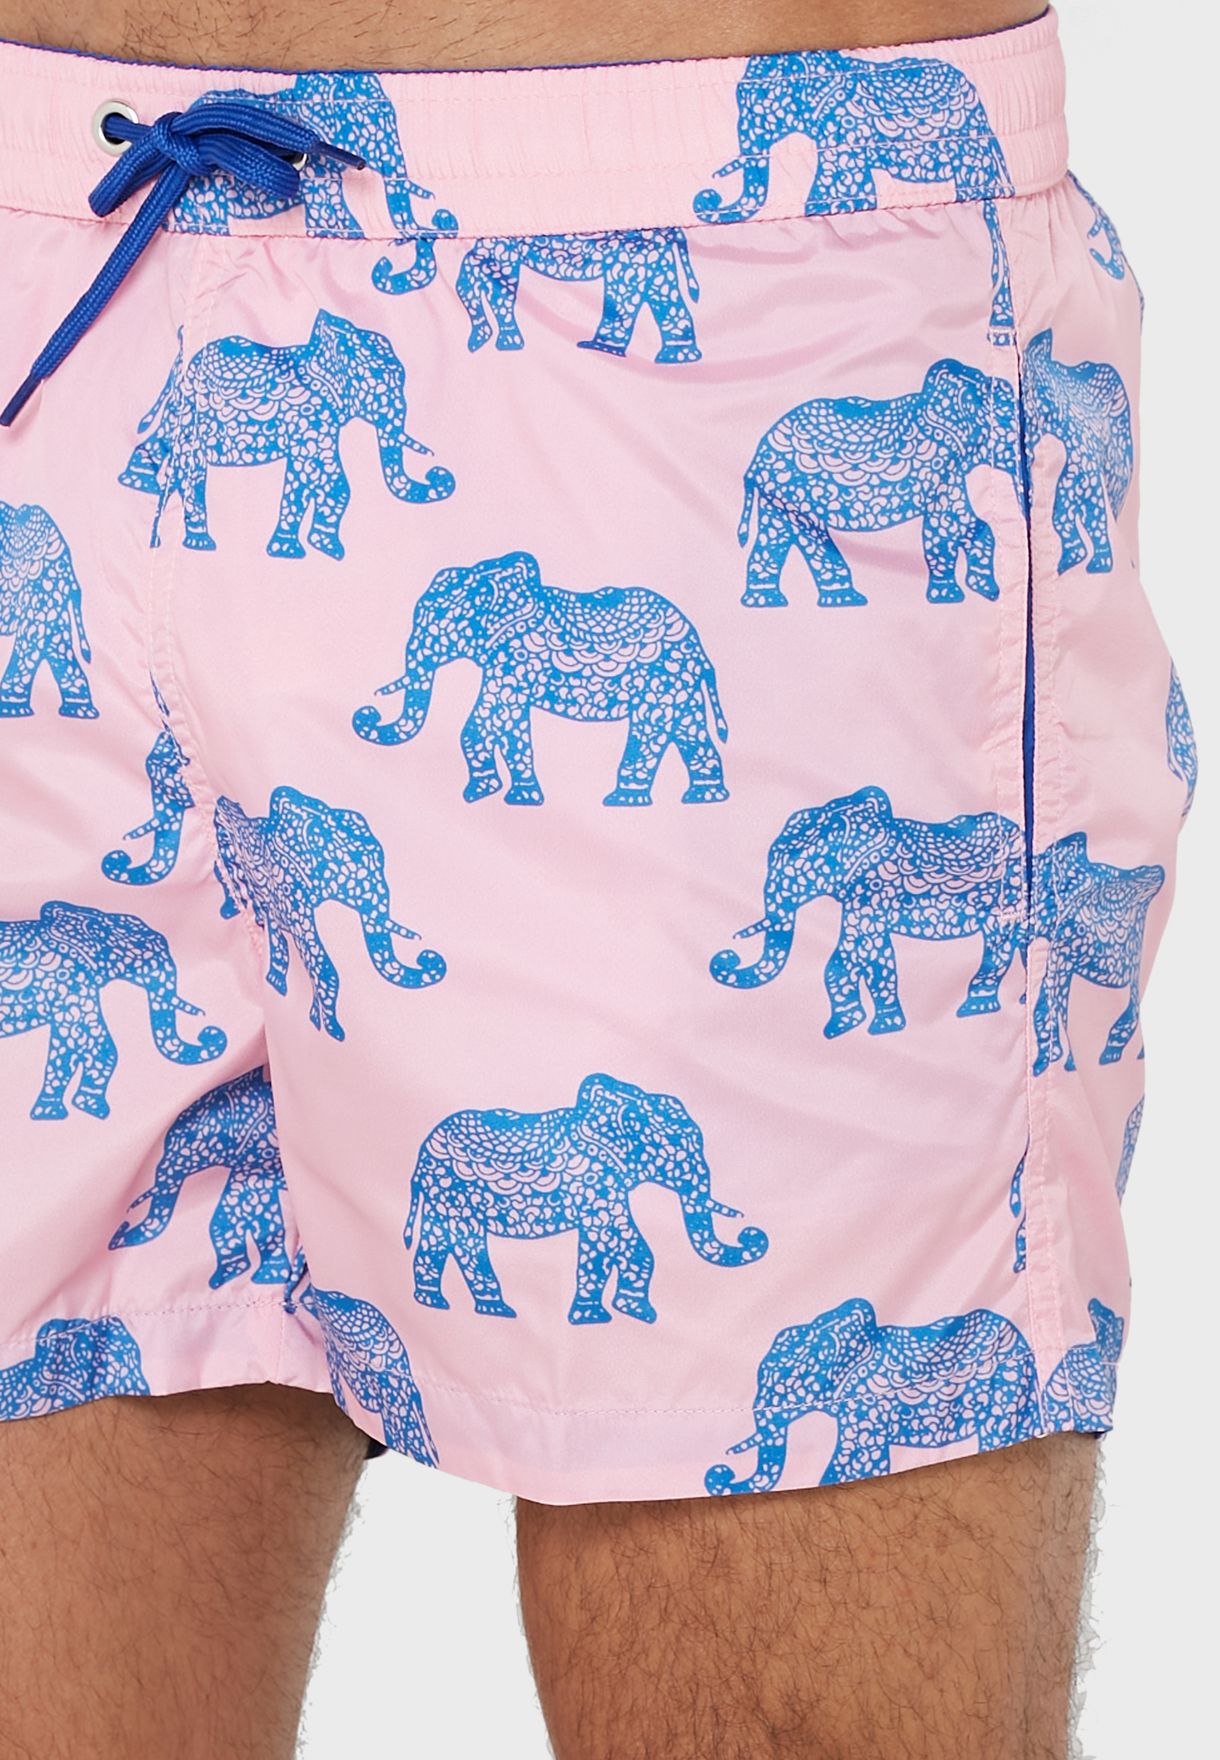 Elephant Printed Swim Shorts